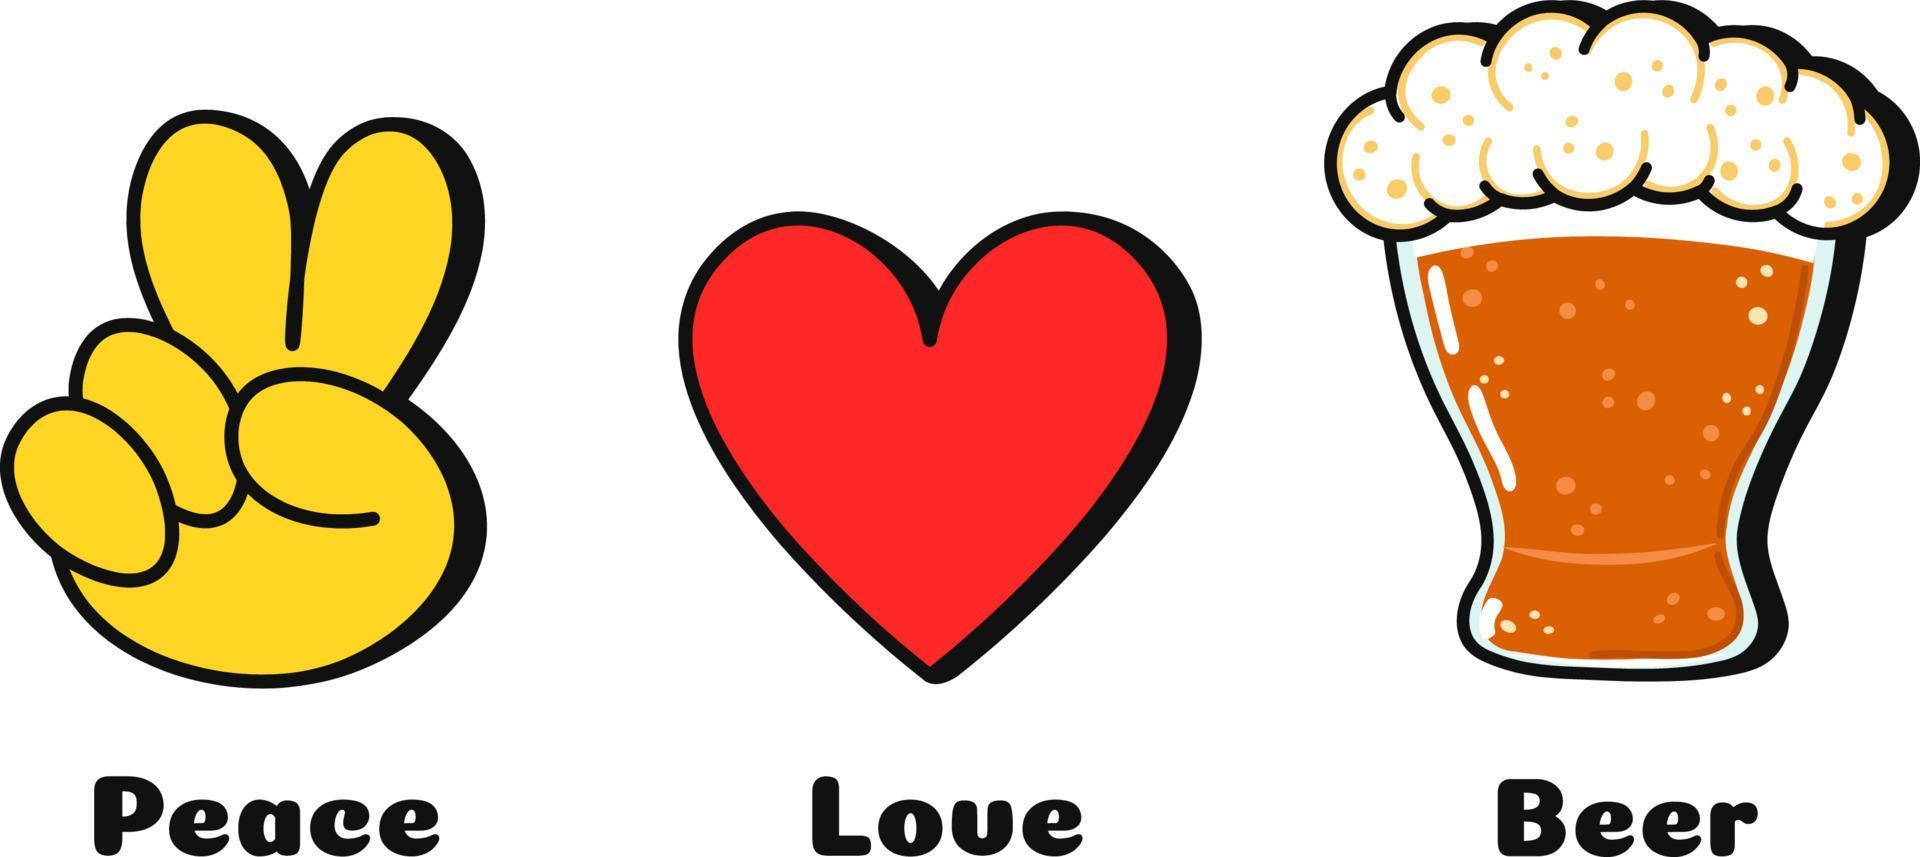 pace, amore, pace concetto Stampa per t-shirt.vettore cartone animato scarabocchio linea grafico illustrazione logo design. pace cartello, cuore, pace Stampa per manifesto, maglietta, logo concetto vettore